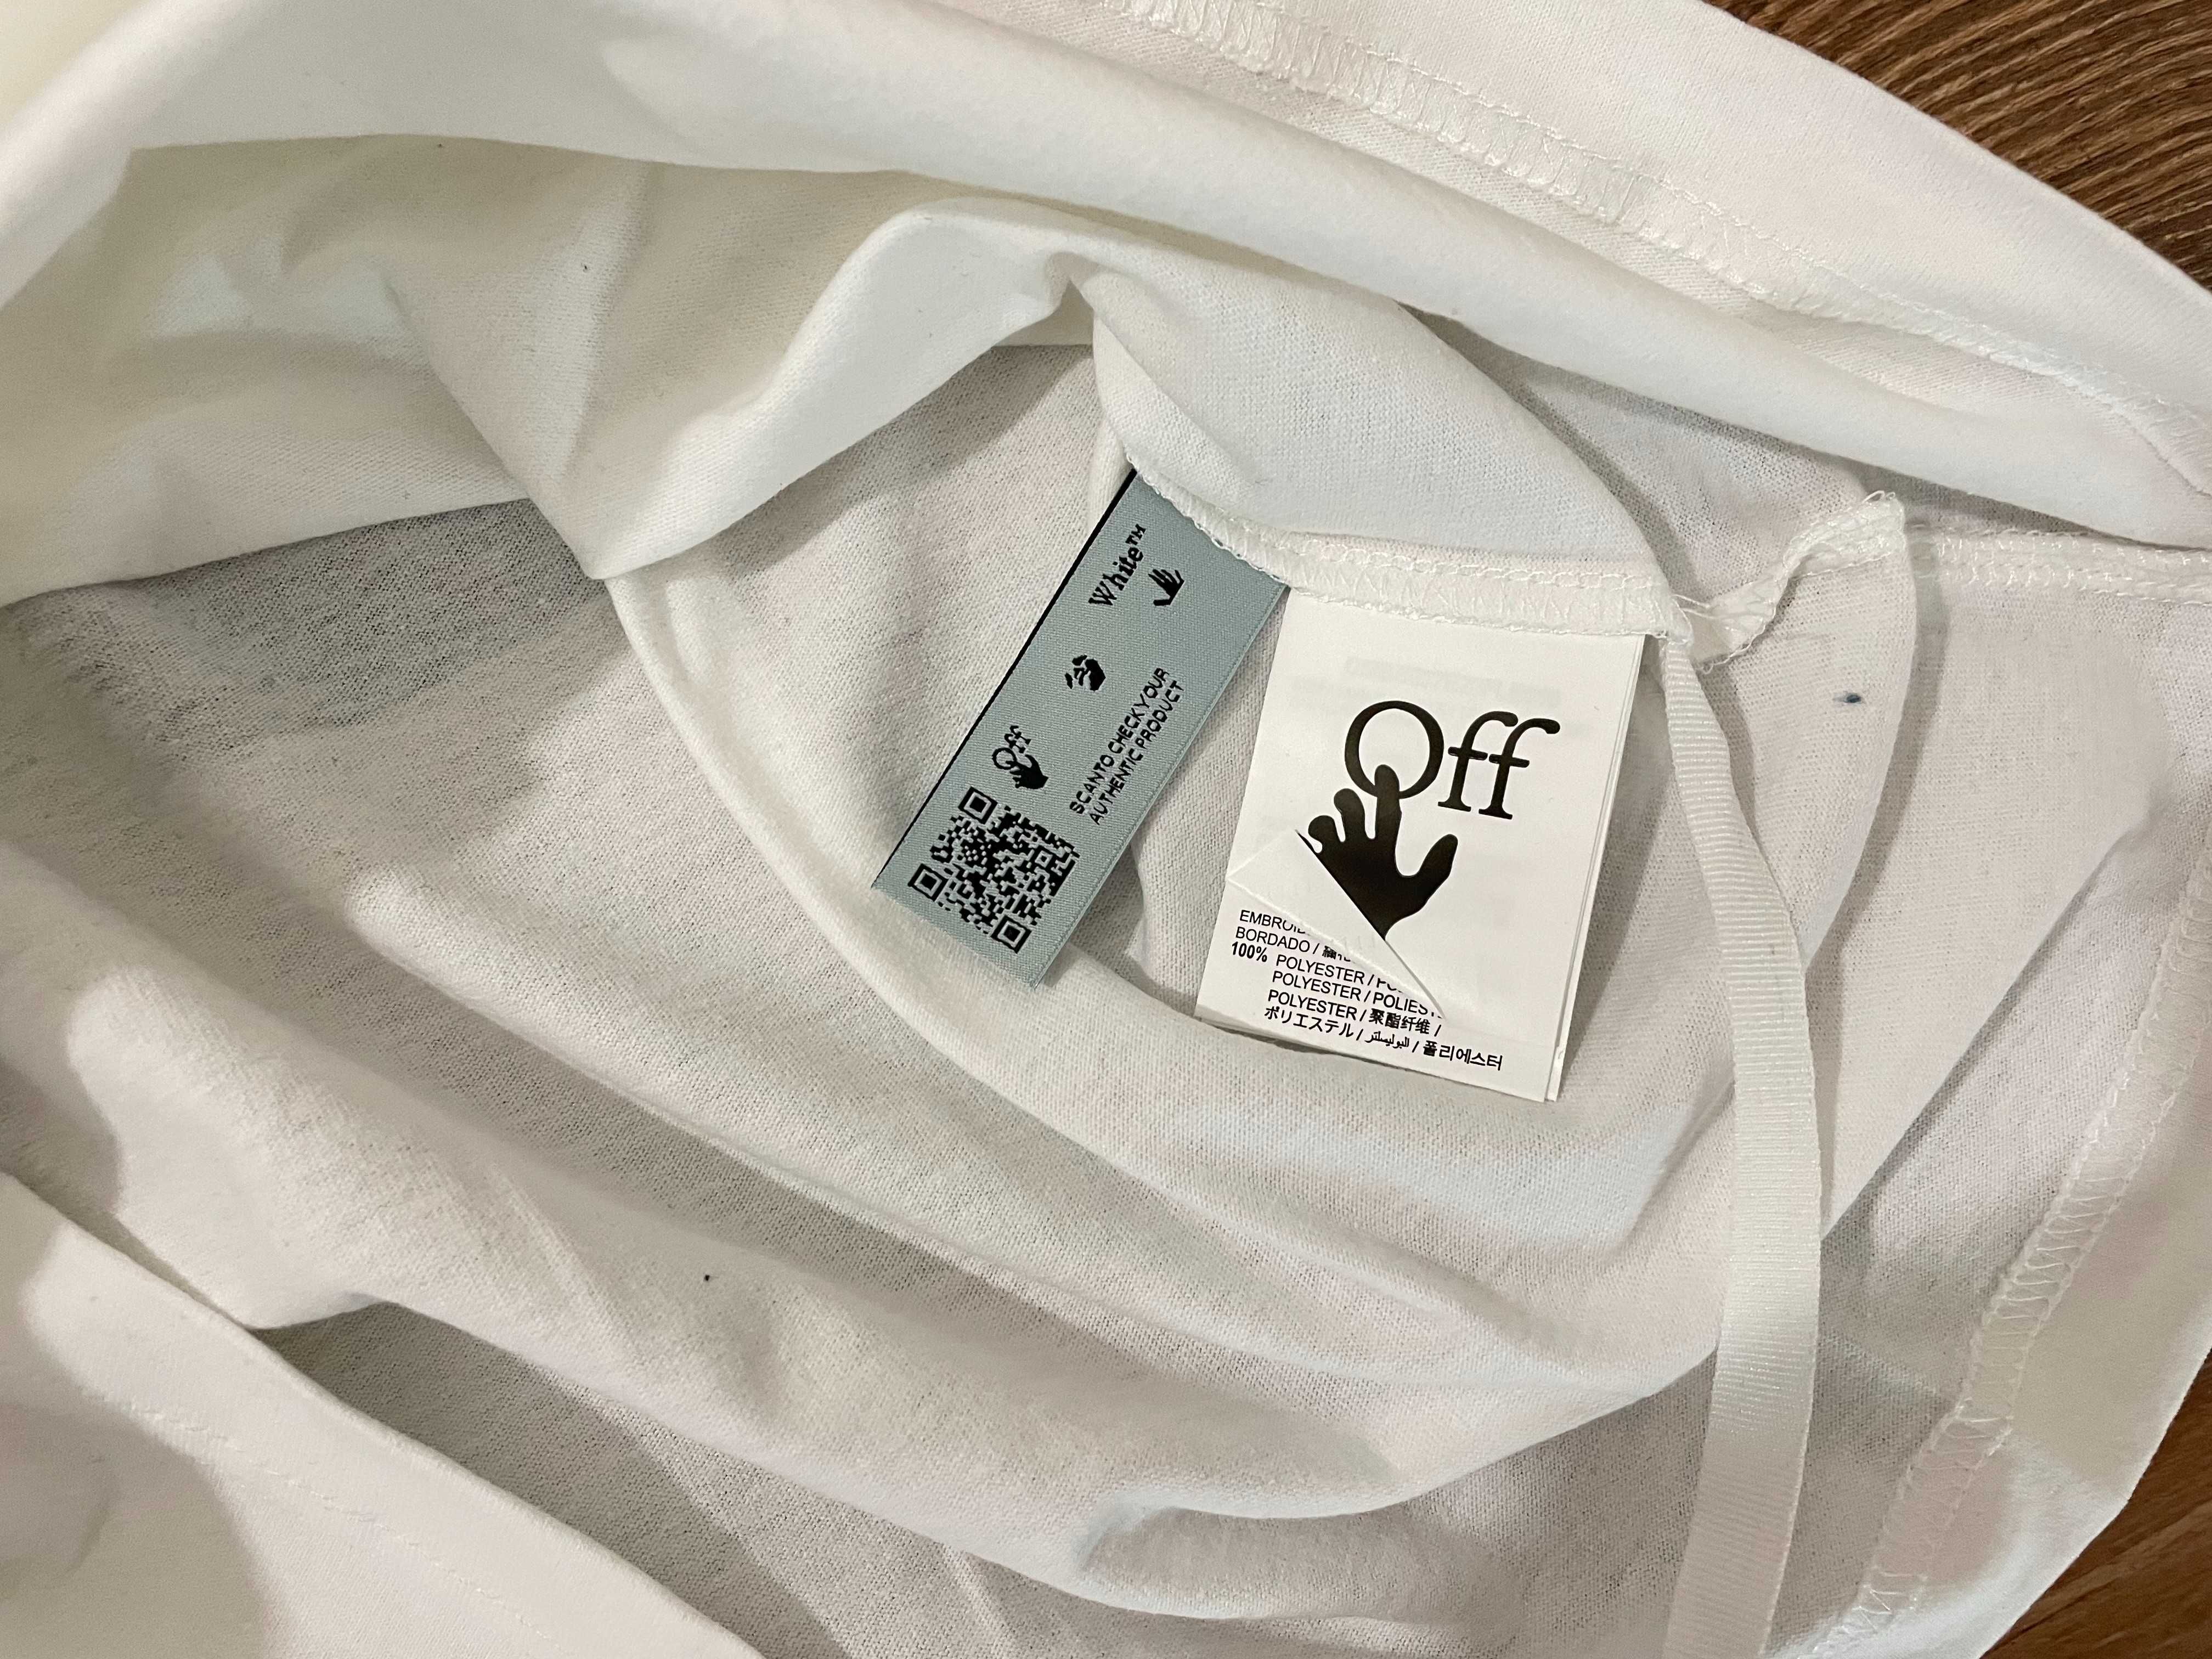 Мъжка тениска Off White - S, M, L, XL, 2XL